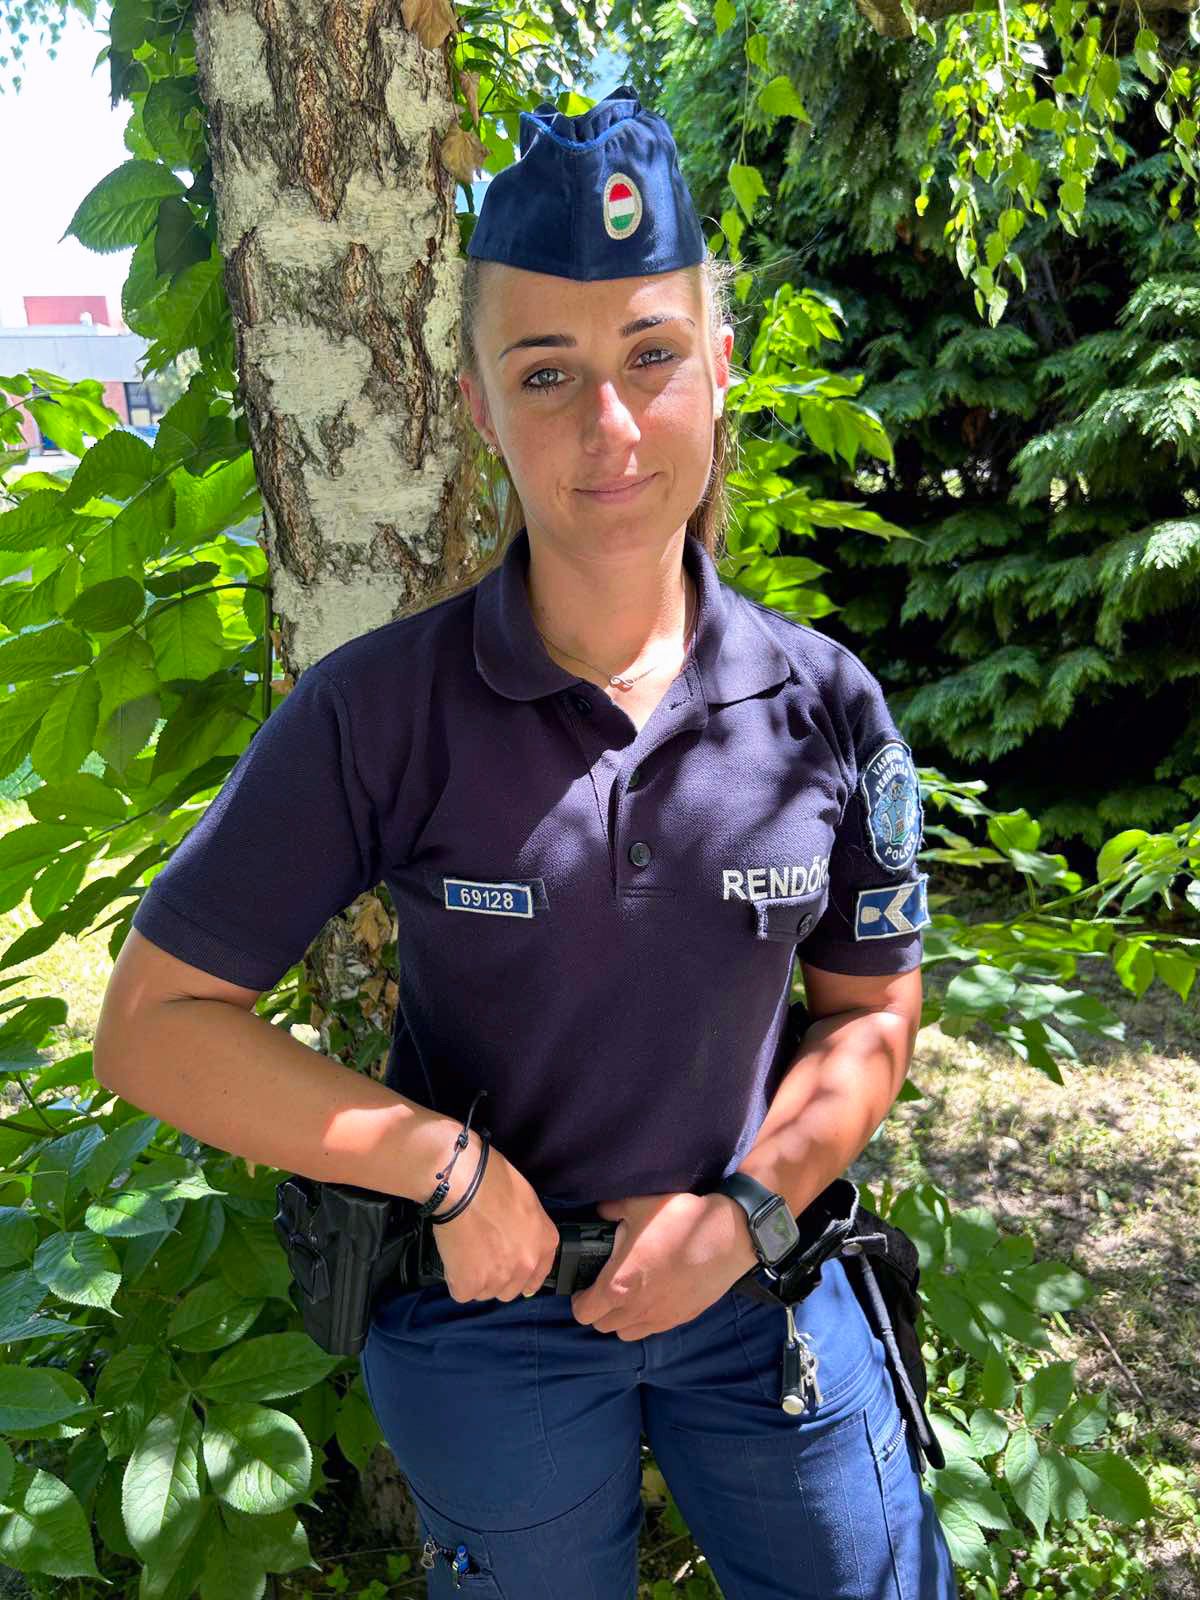 Koronczai Cintia őrmester nemcsak az utcán, de játékvezetőként a futballpályán is rendet tart